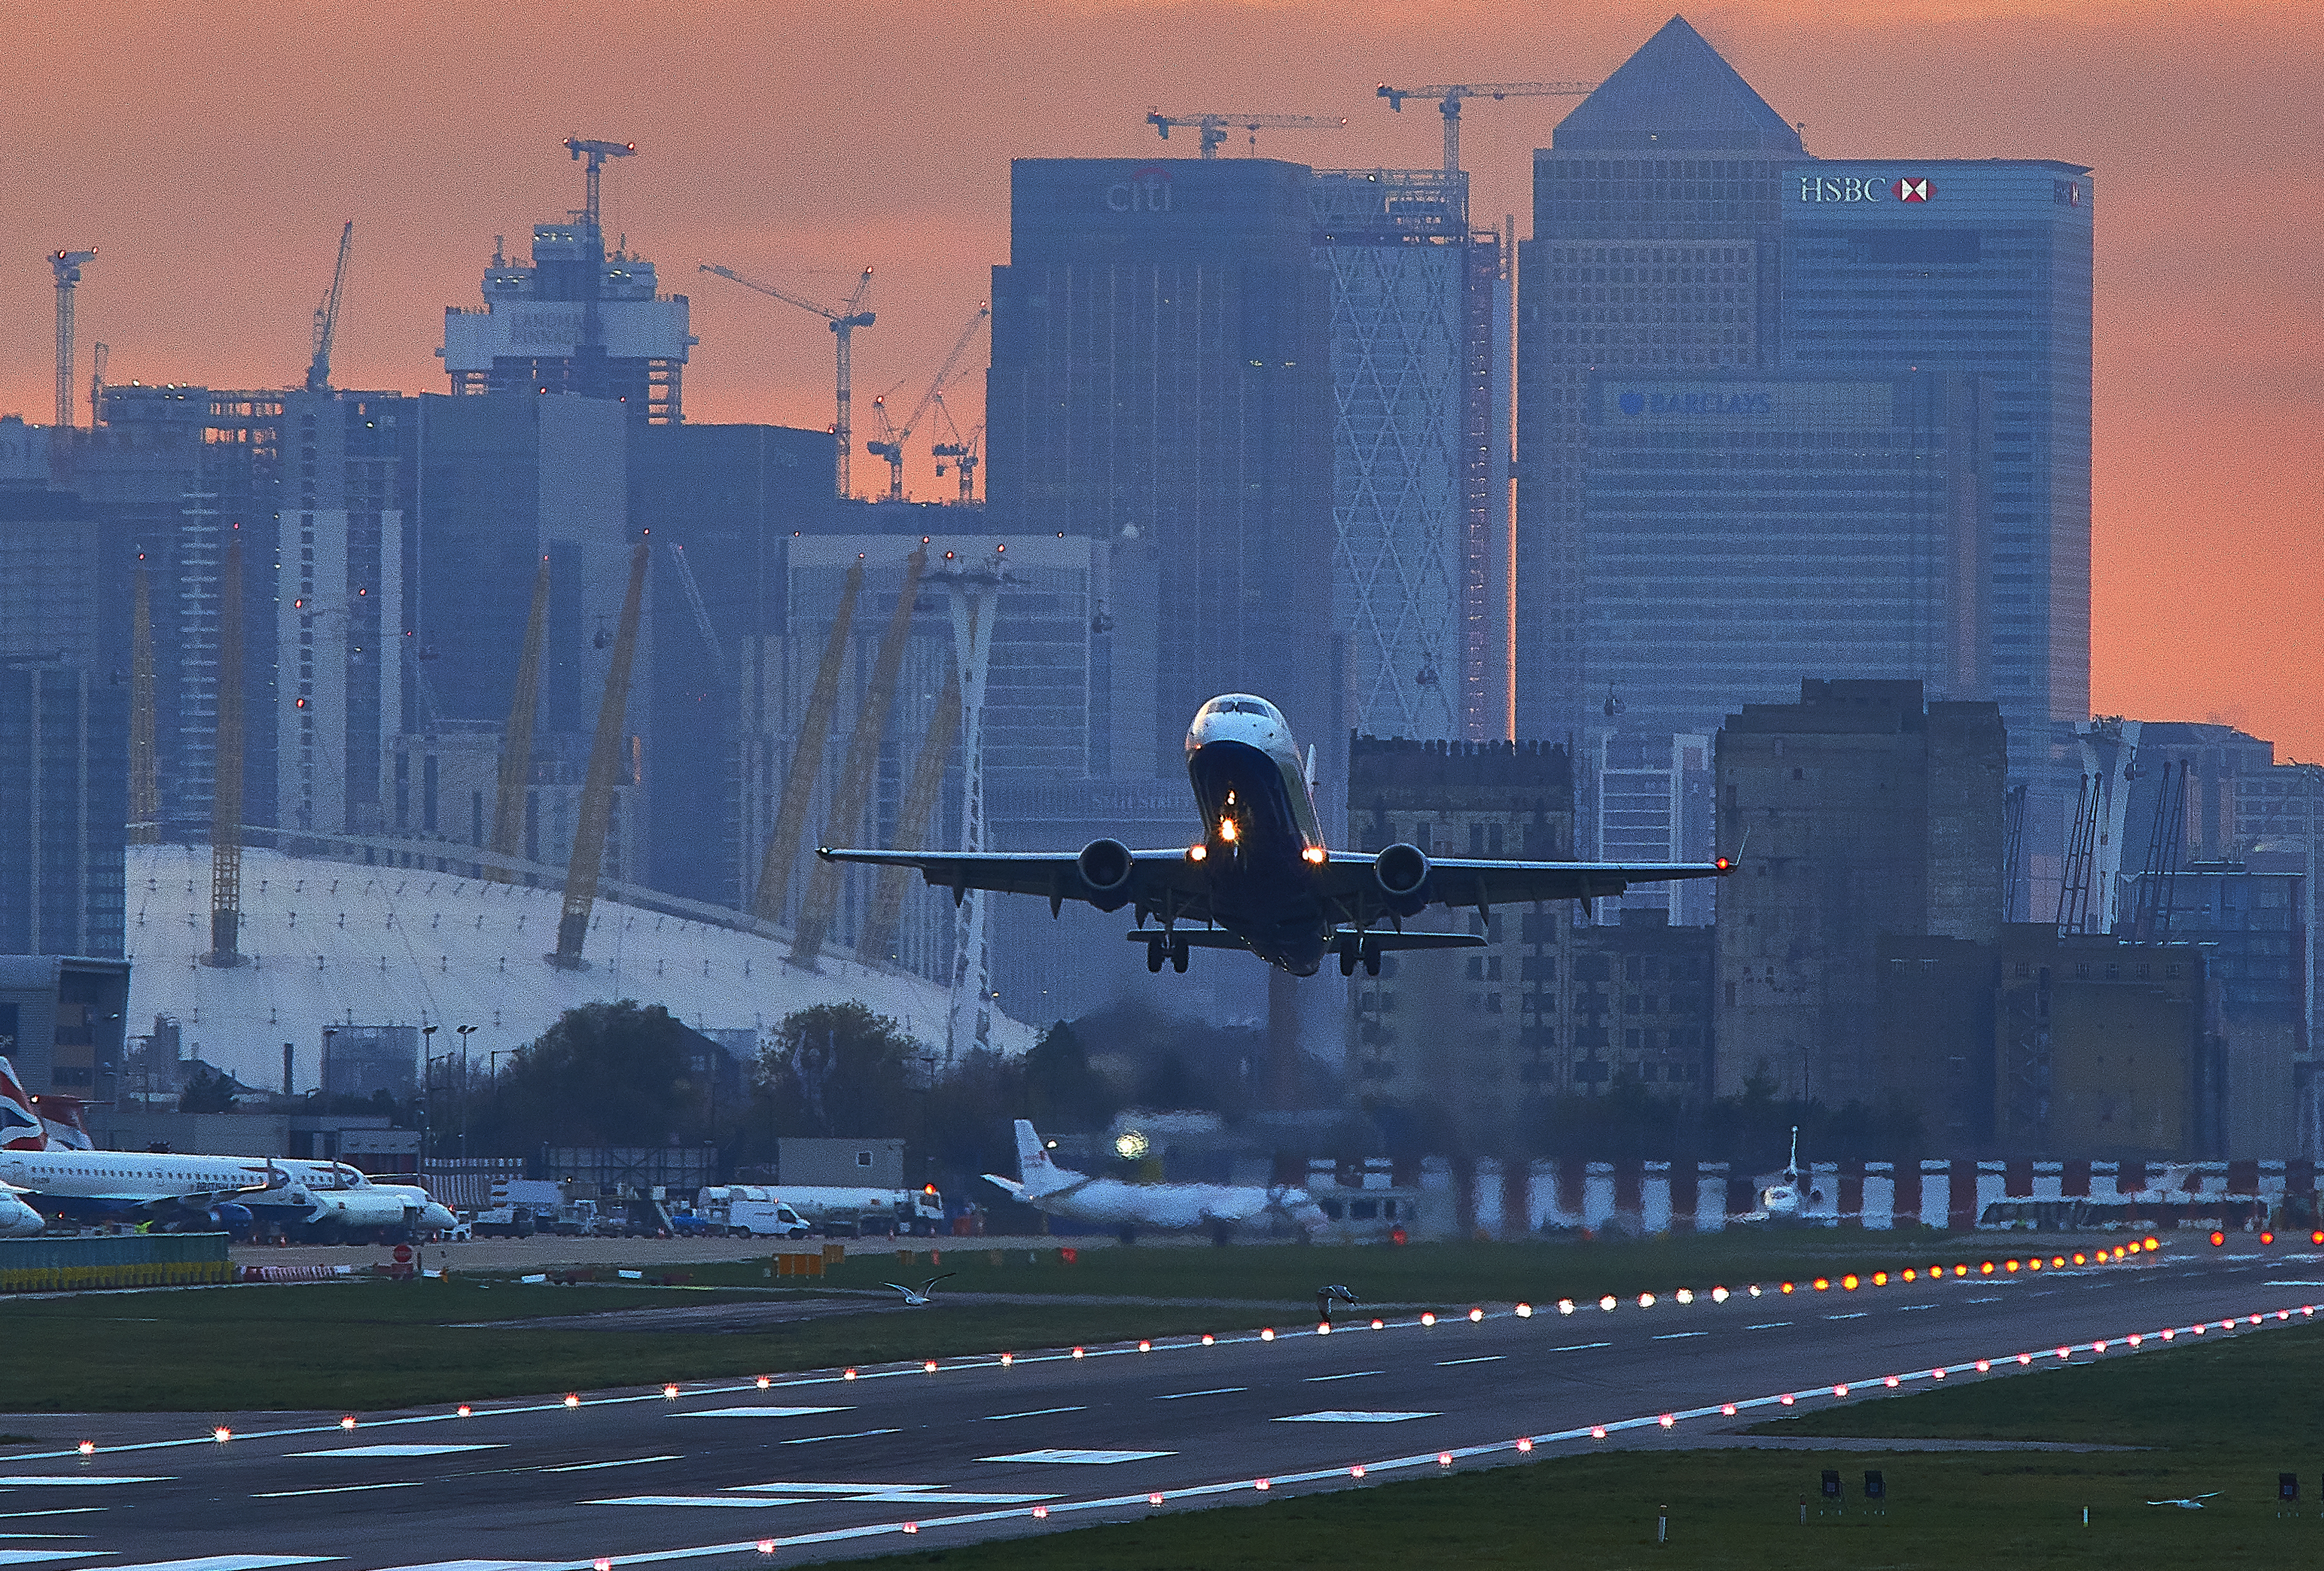 Plane taking off in London